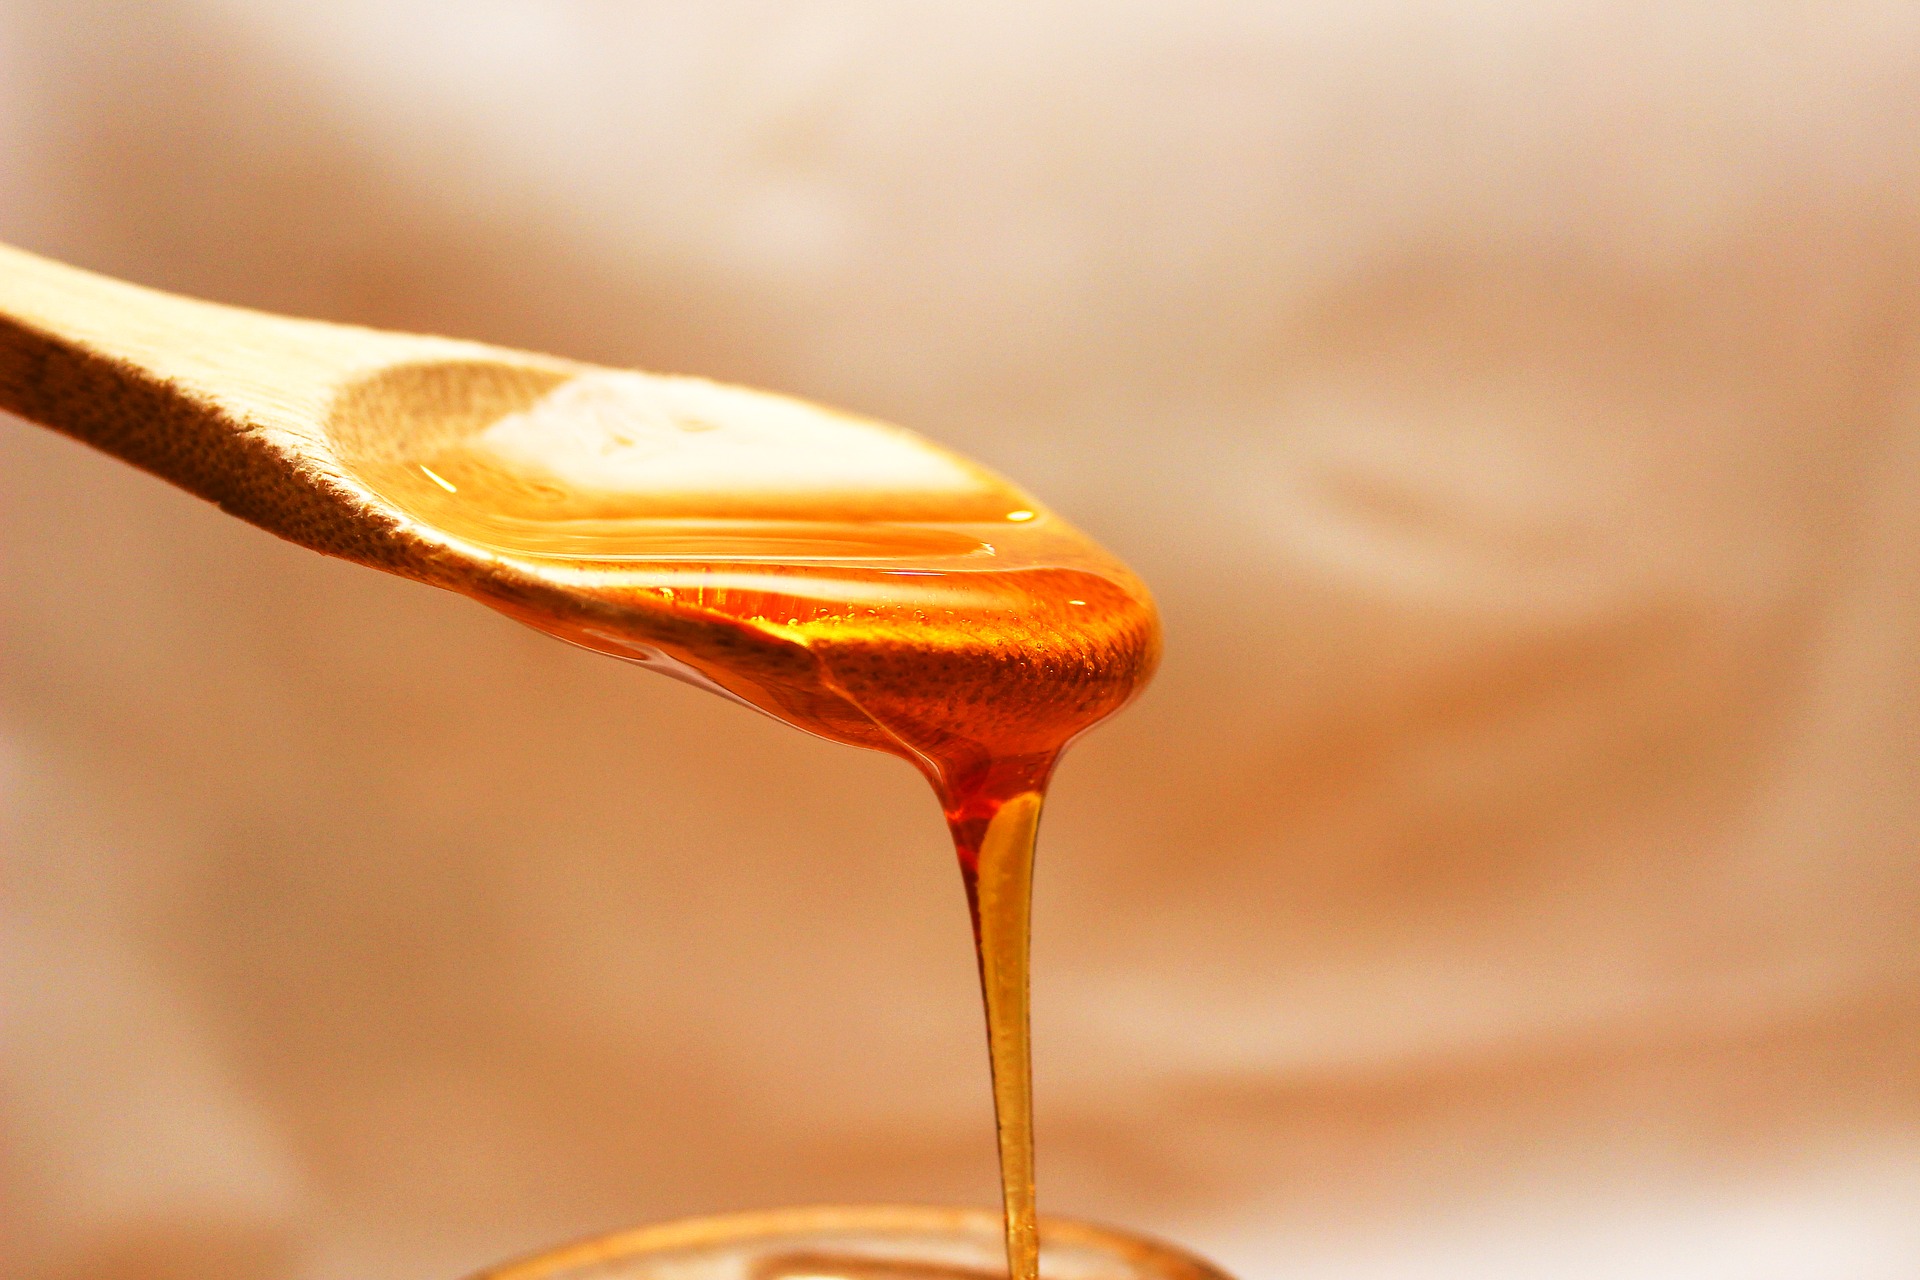 Afirman escasea la miel de abejas de producción nacional por aumento en consumo y cosecha insuficiente